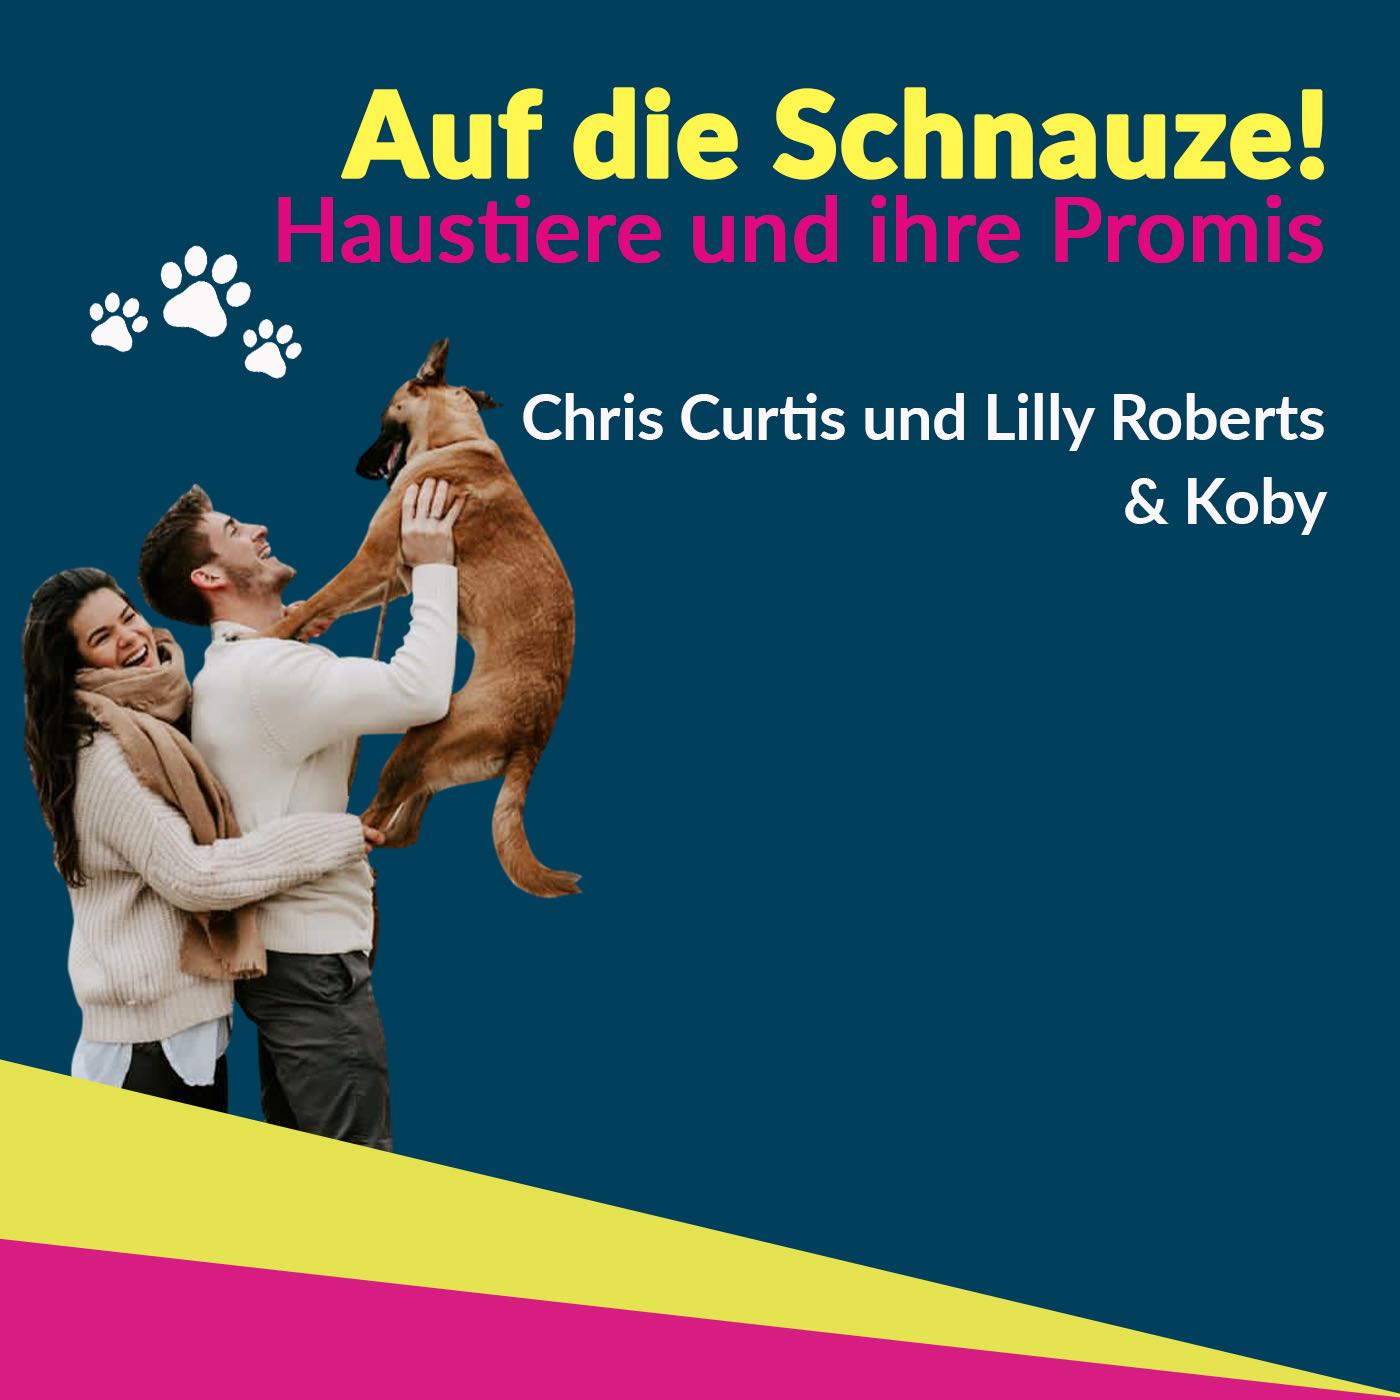 Chris Curtis & Lilly Roberts - ein sportliches Influencer-Paar mit Hund